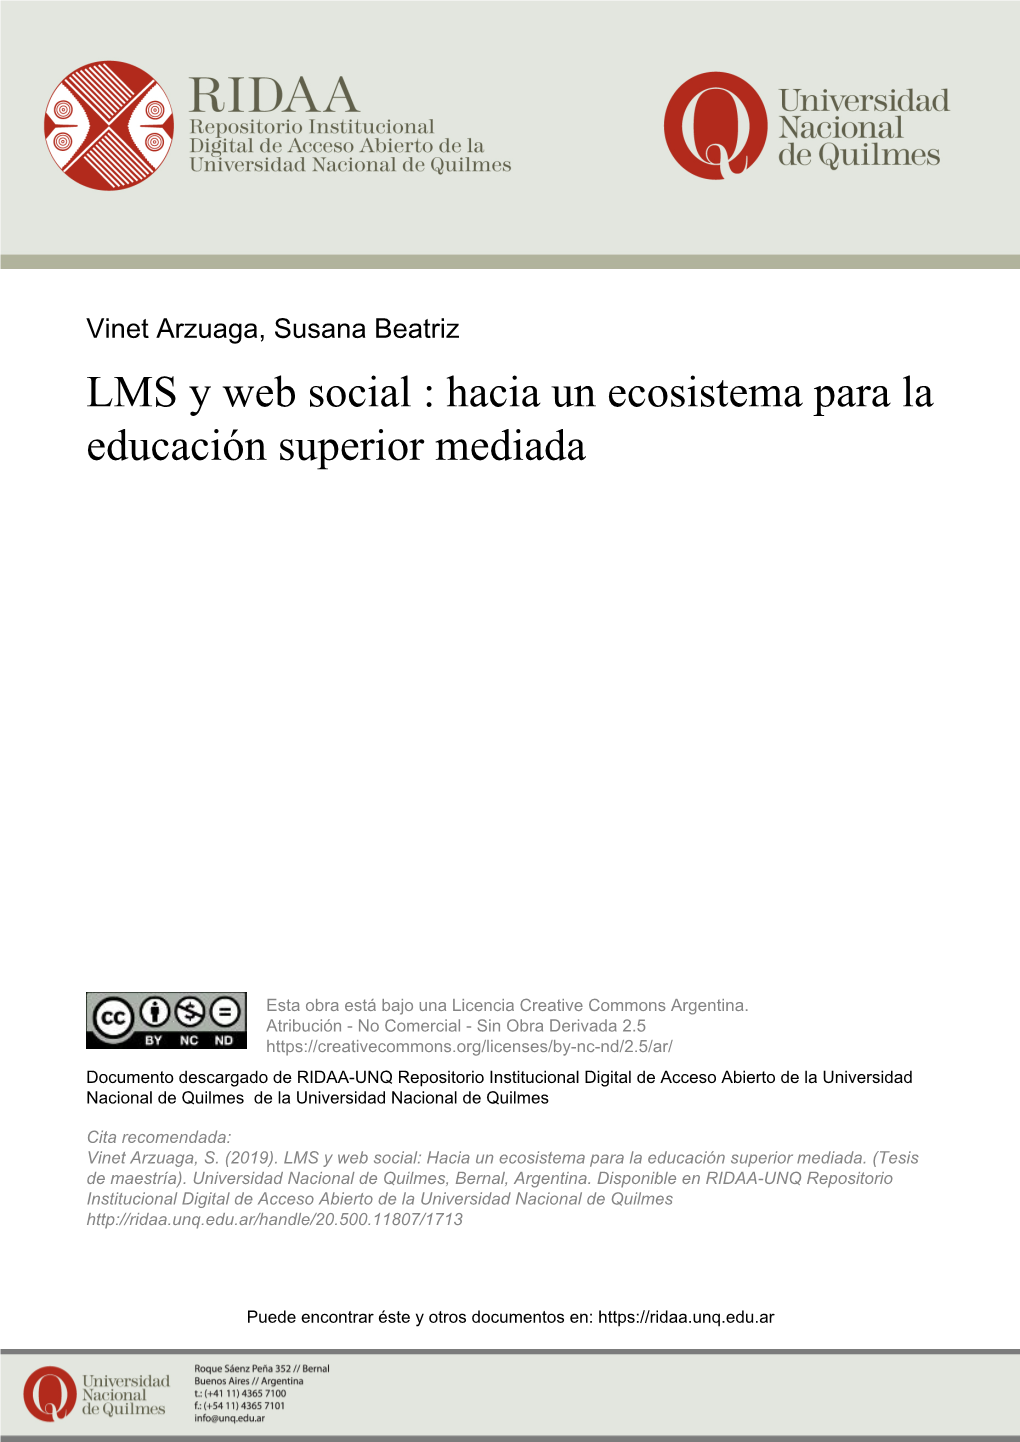 LMS Y Web Social : Hacia Un Ecosistema Para La Educación Superior Mediada